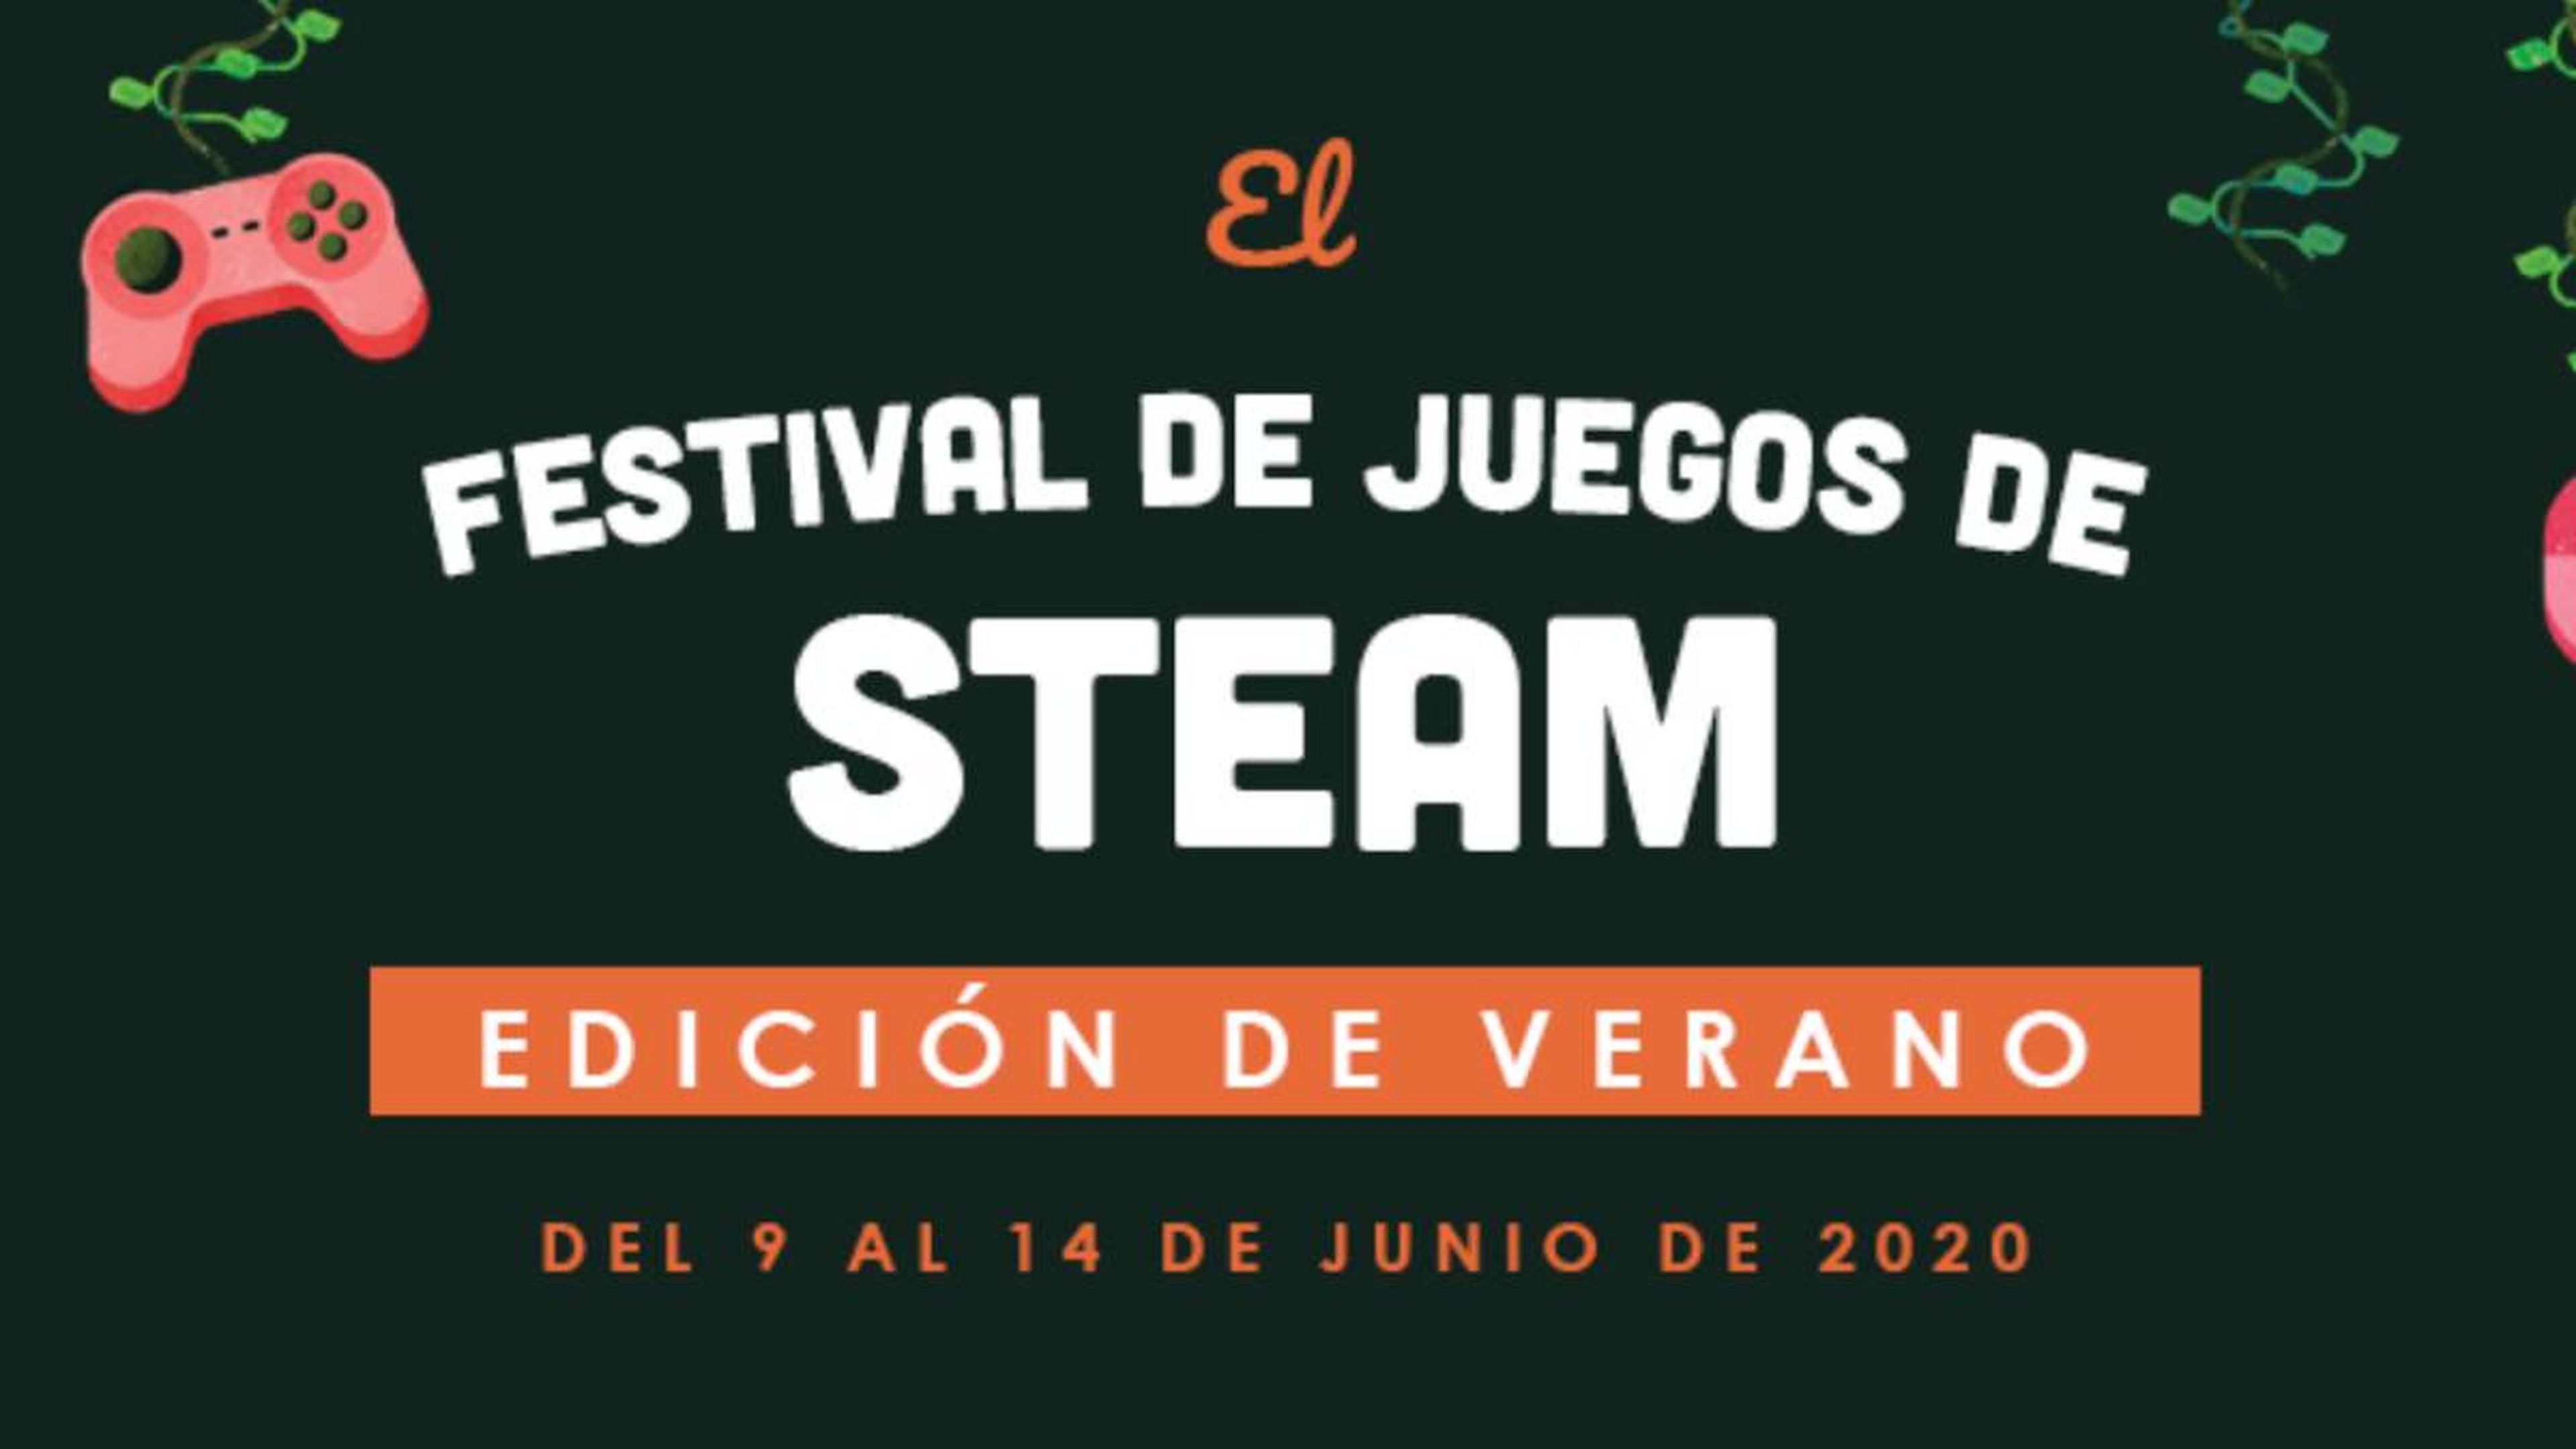 Steam Festival de Juegos